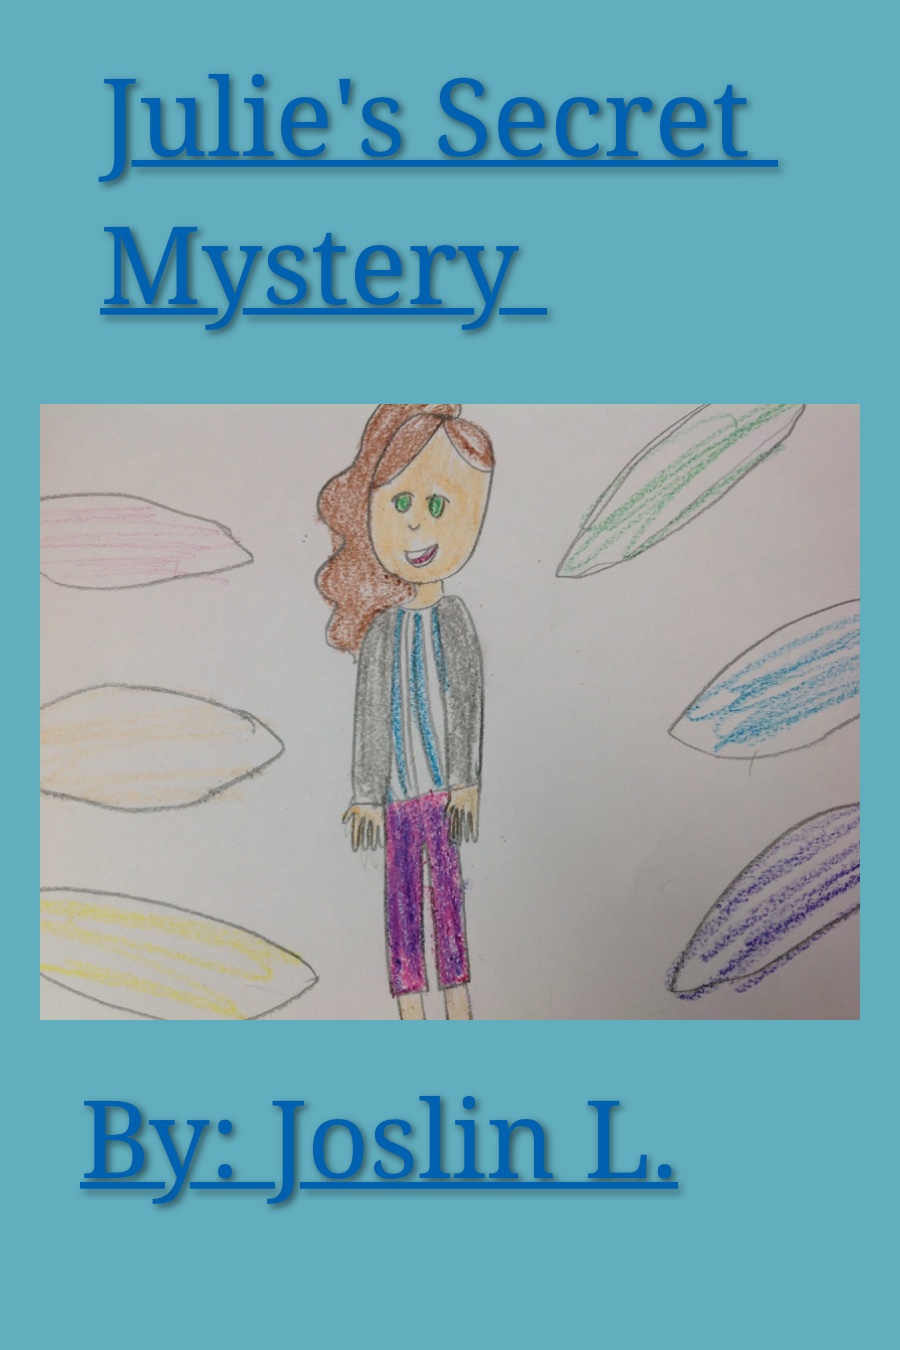 Julies Secret Mystery by Joslin L